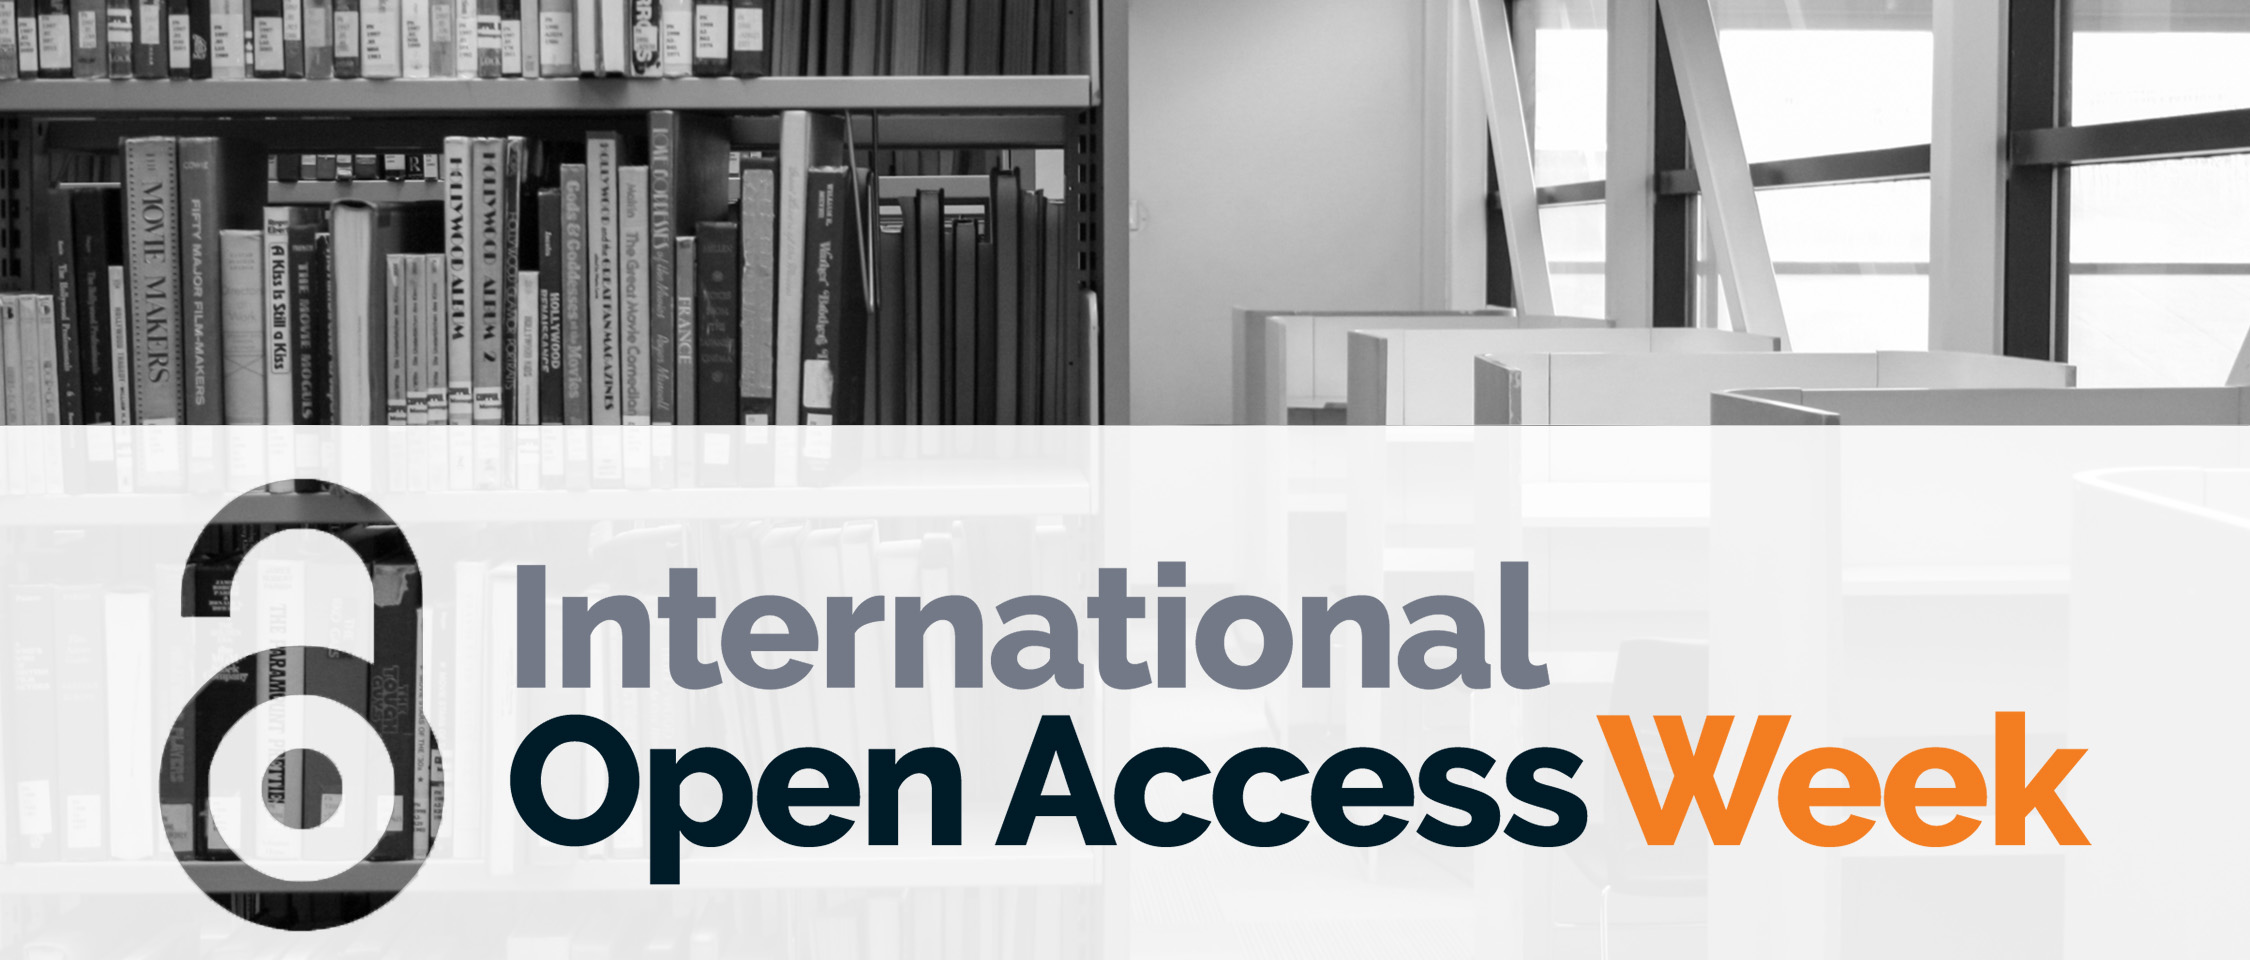 International Open Access Week 2022